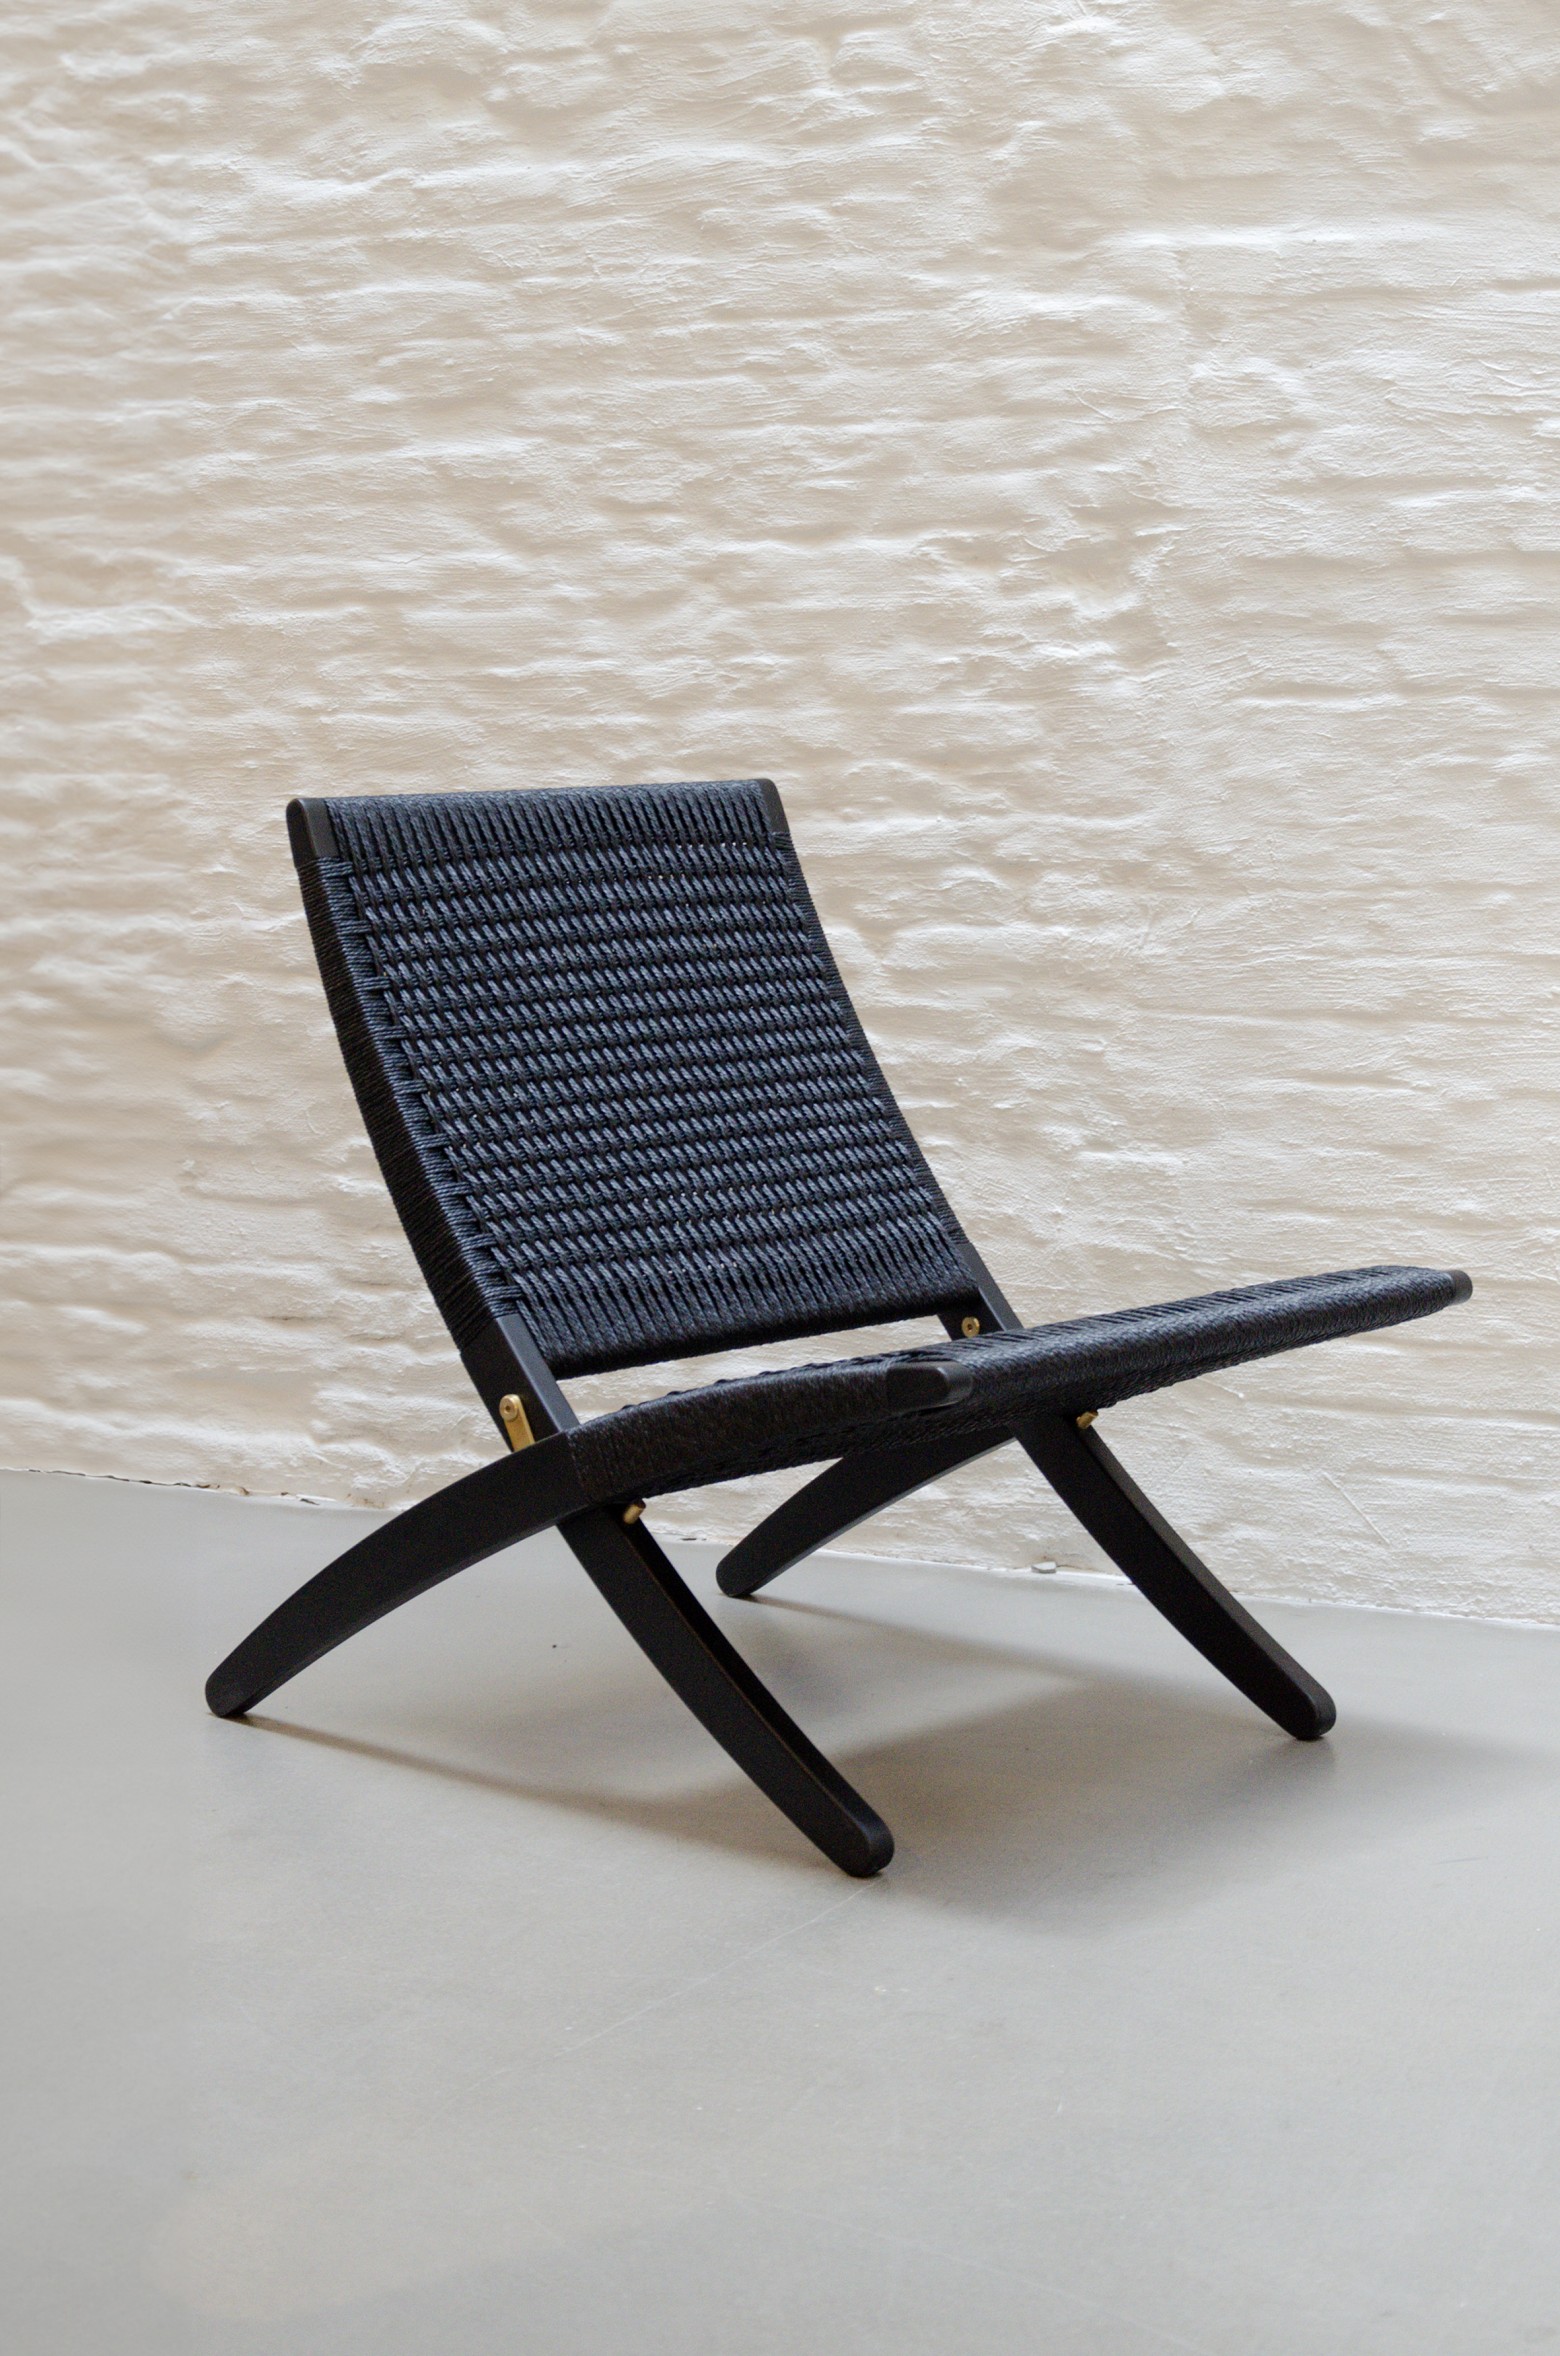 Tijdloos design stoel voor het hedendaags interieur  Victors Design Agency